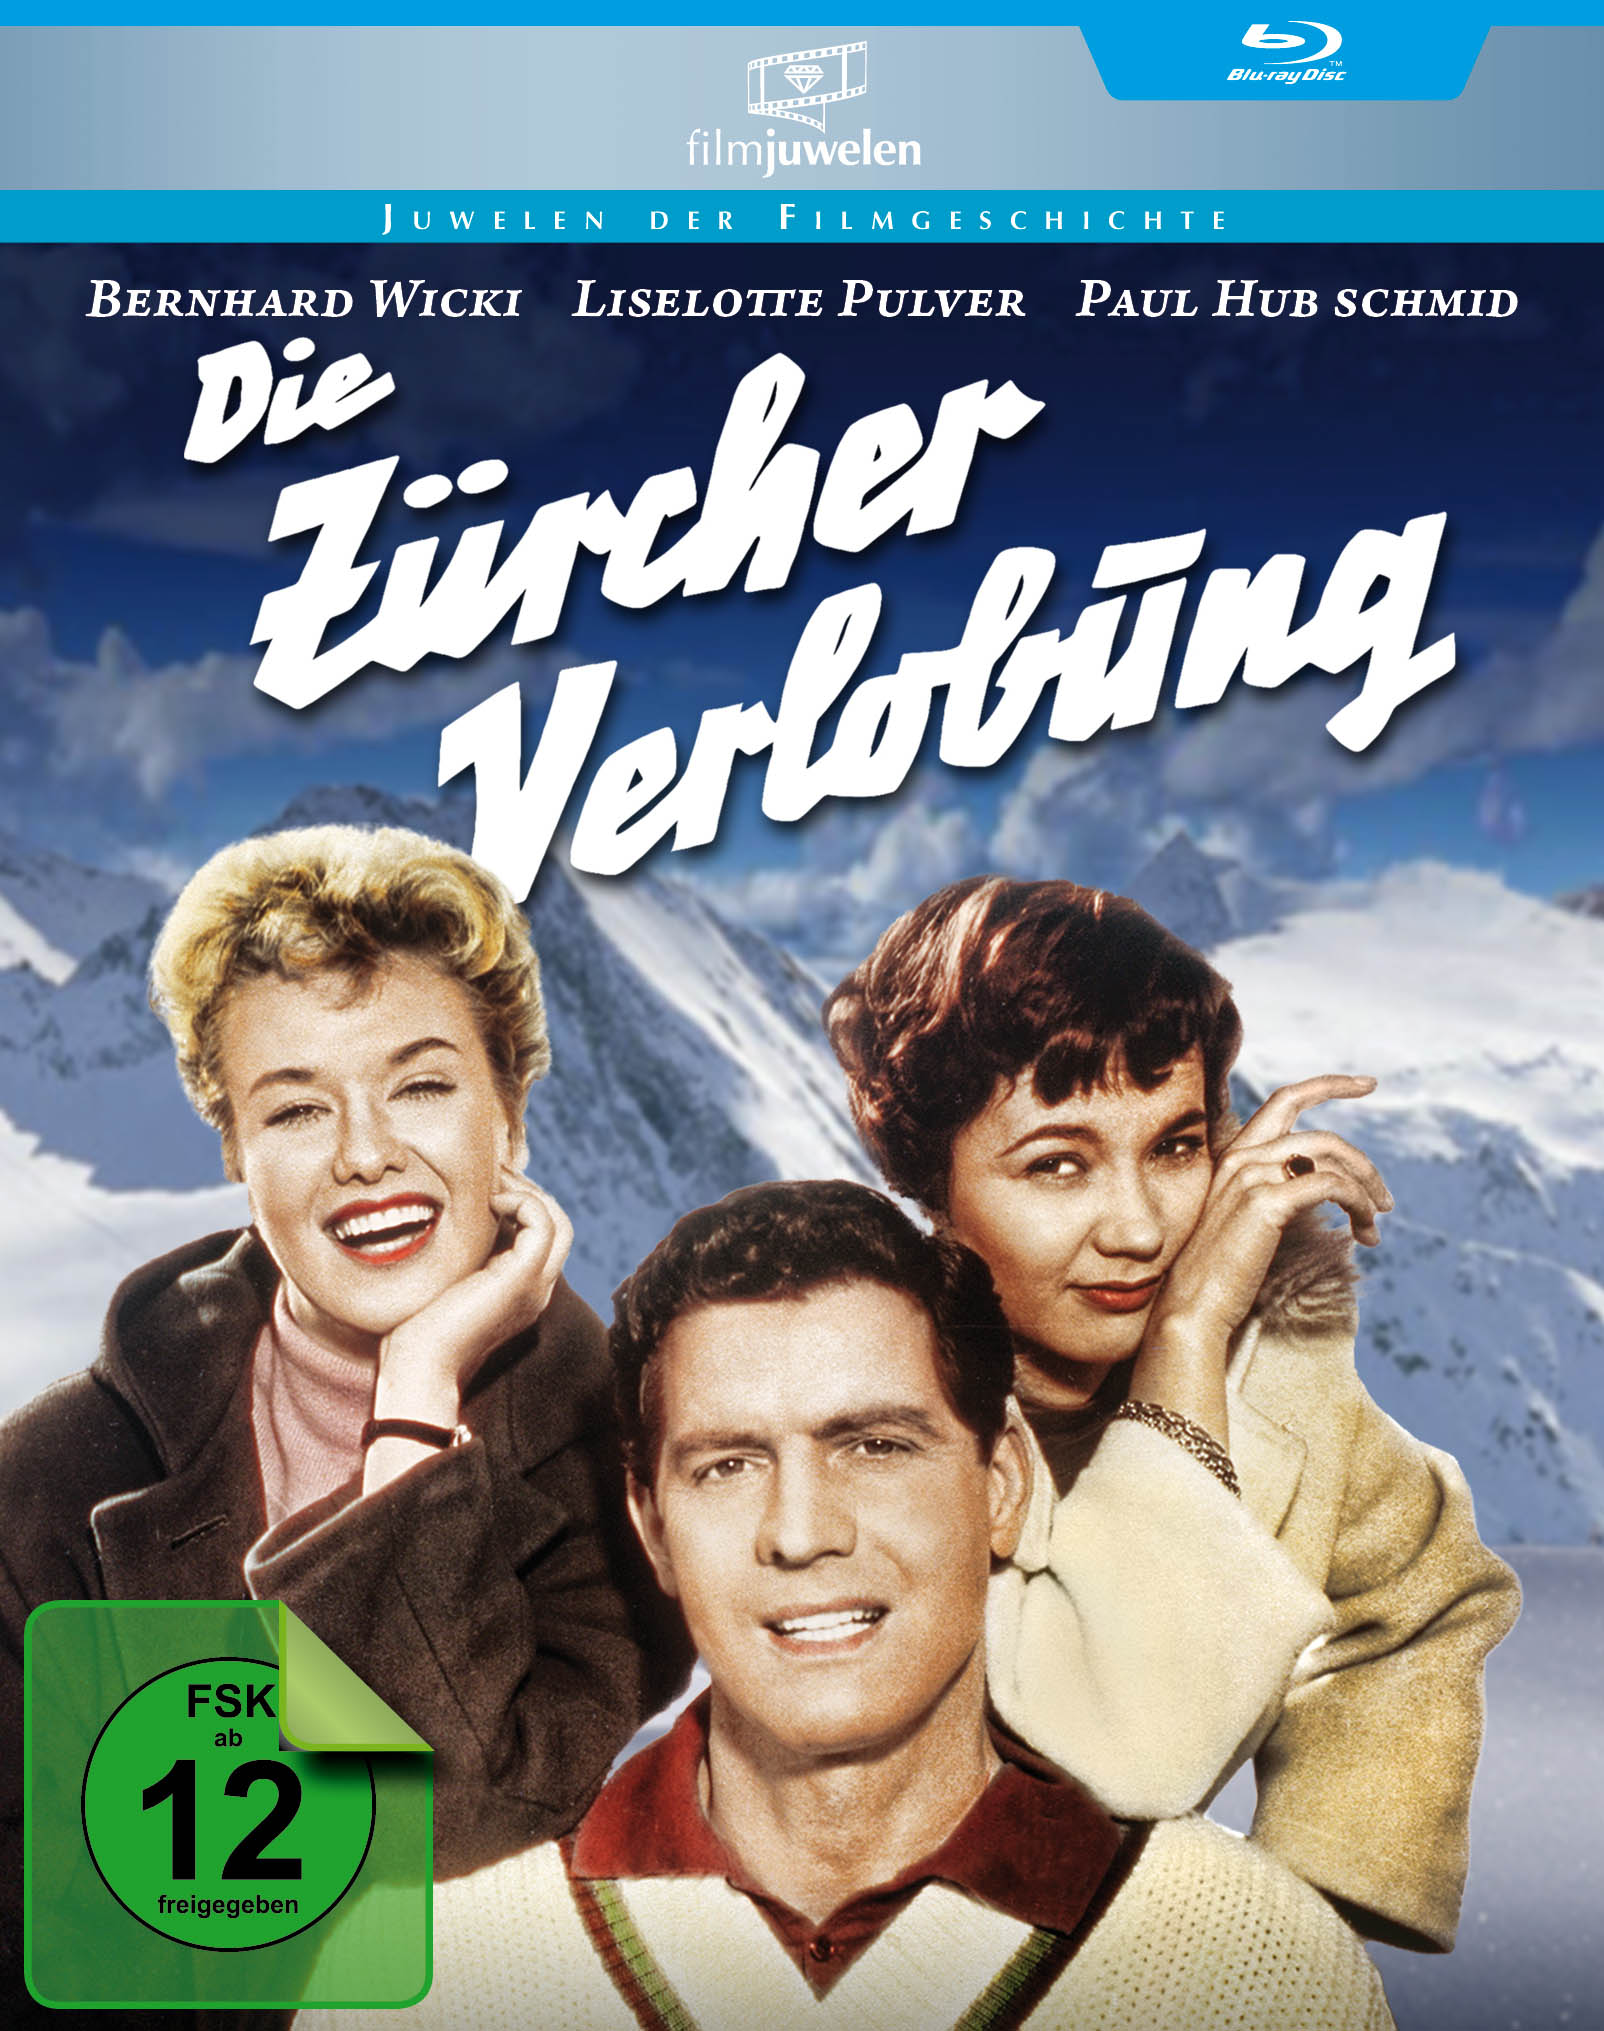 Blu-ray VERLOBUNG ZÜRCHER DIE